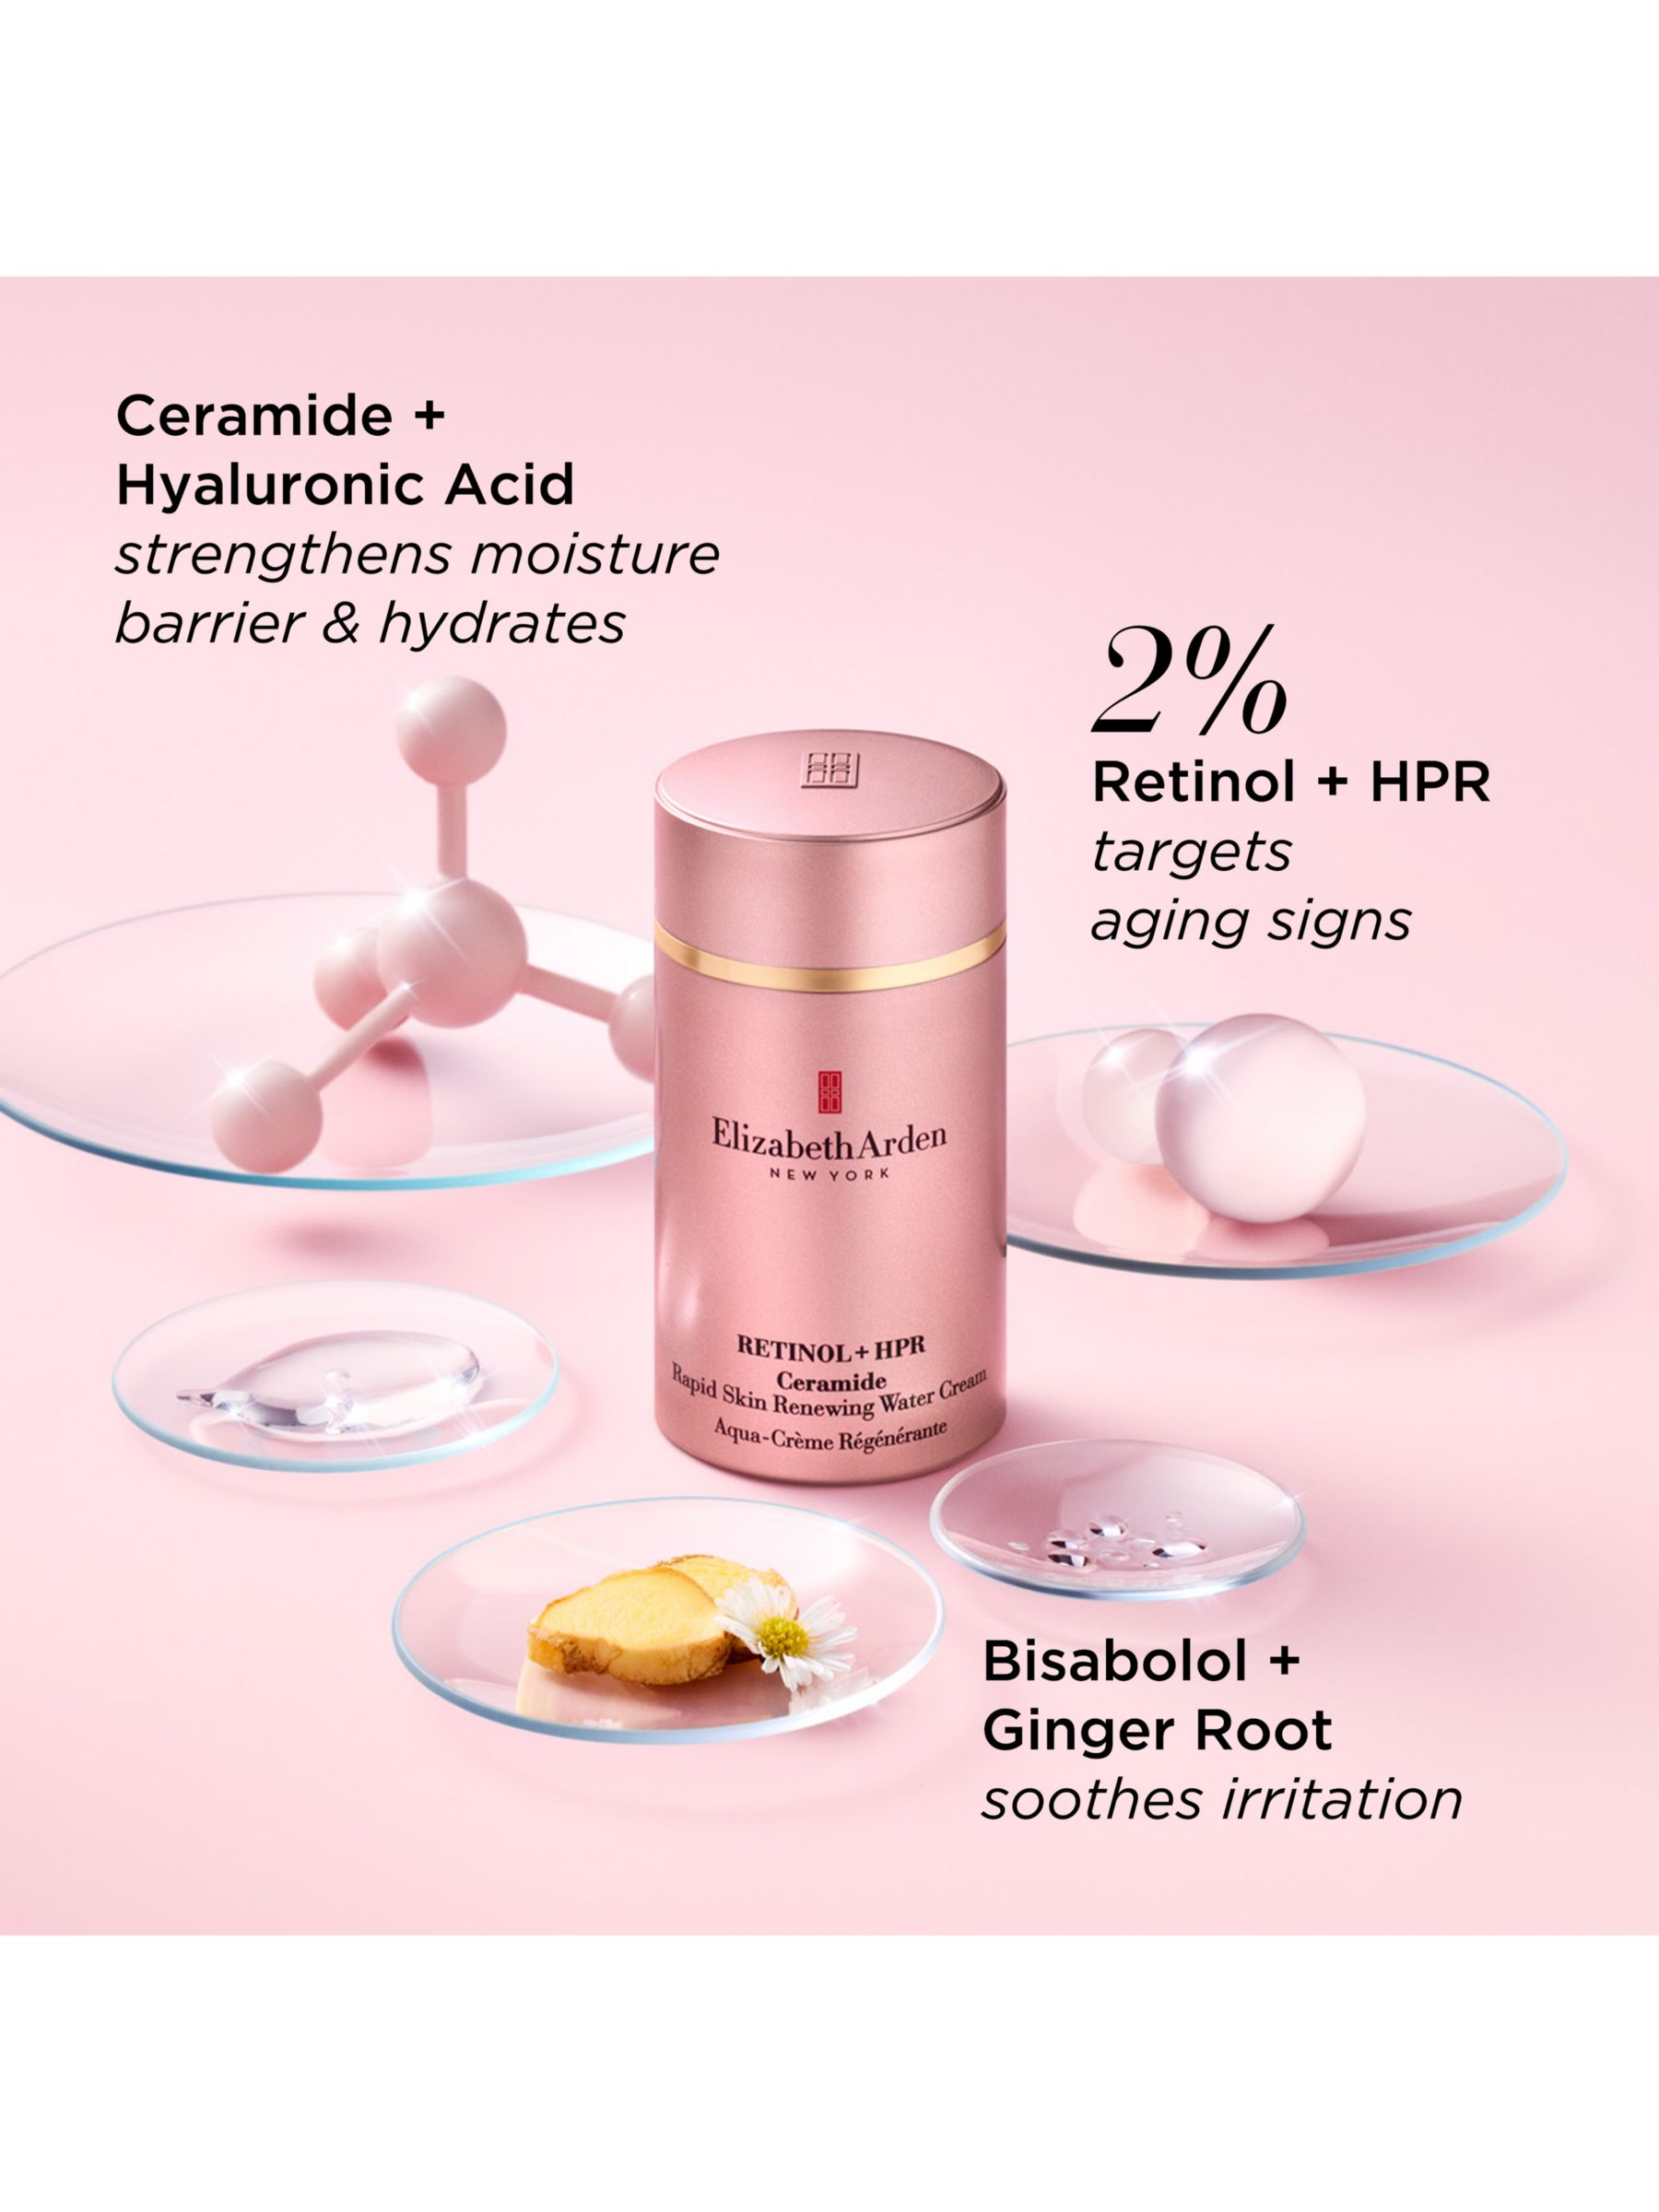 Elizabeth Arden Retinol + HPR Ceramide Rapid Skin-Renewing Water Cream, 50ml 7